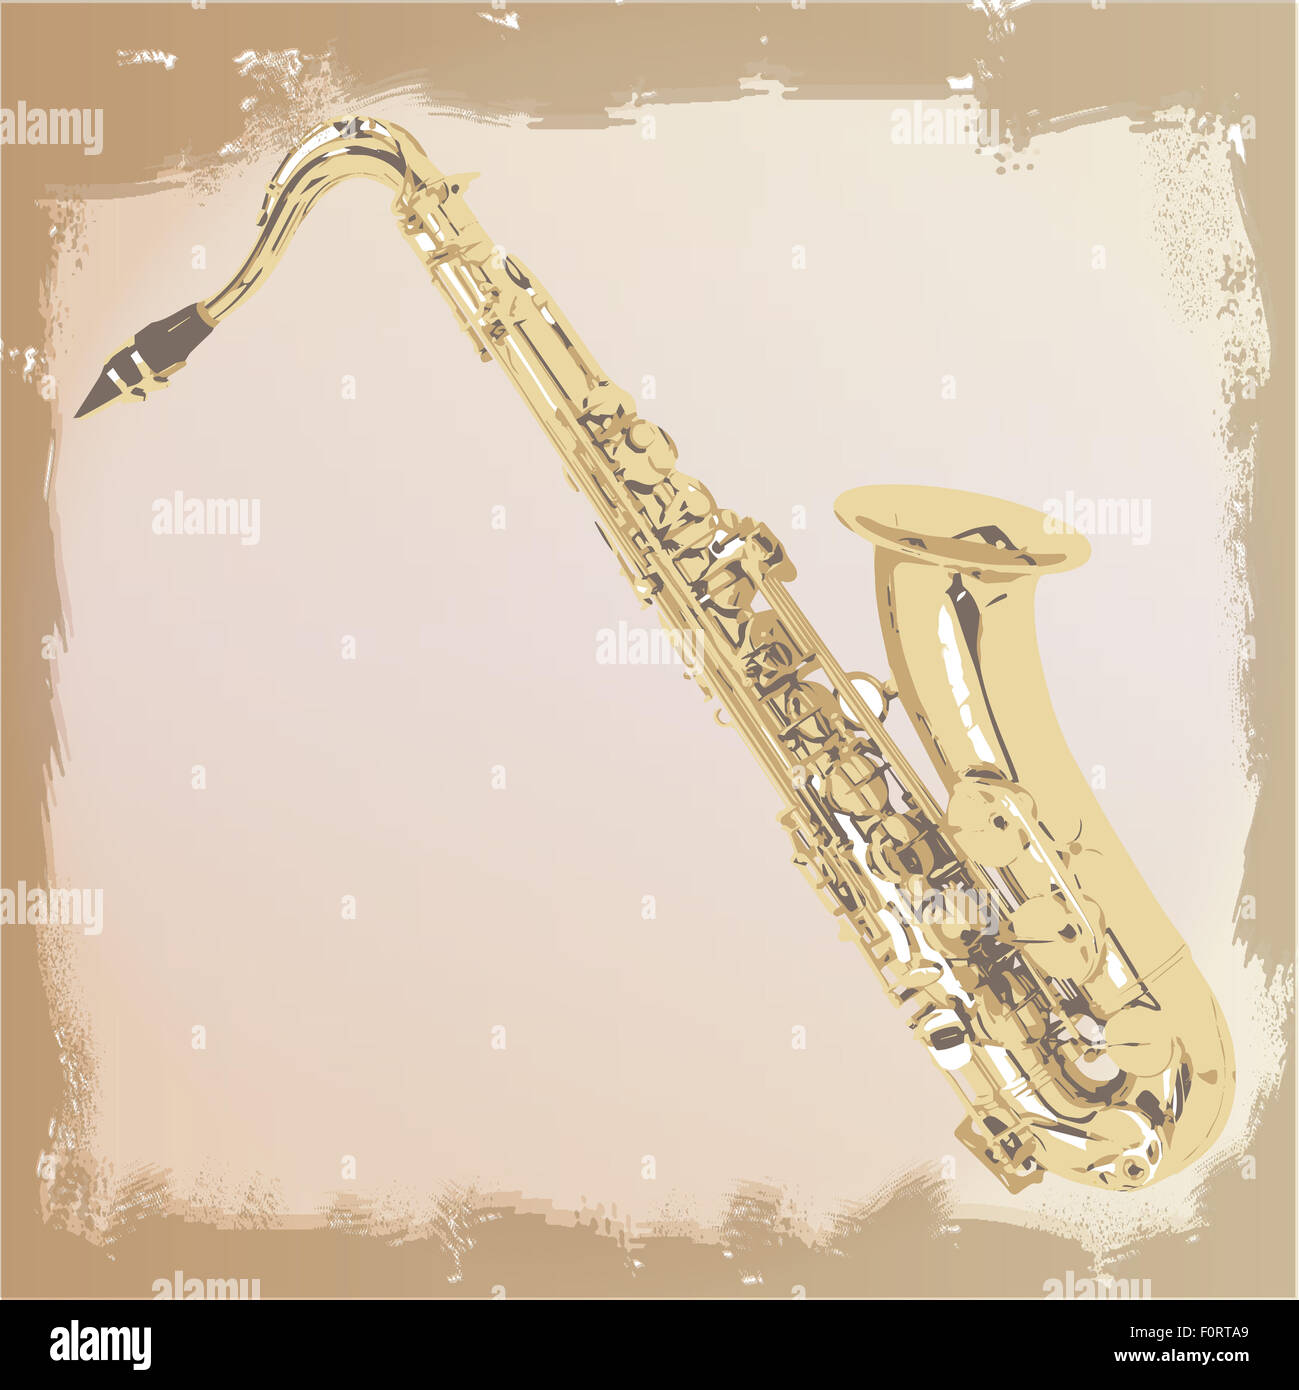 Un fond grunge style saxophone avec zones décolorées et déchiqueté Banque D'Images